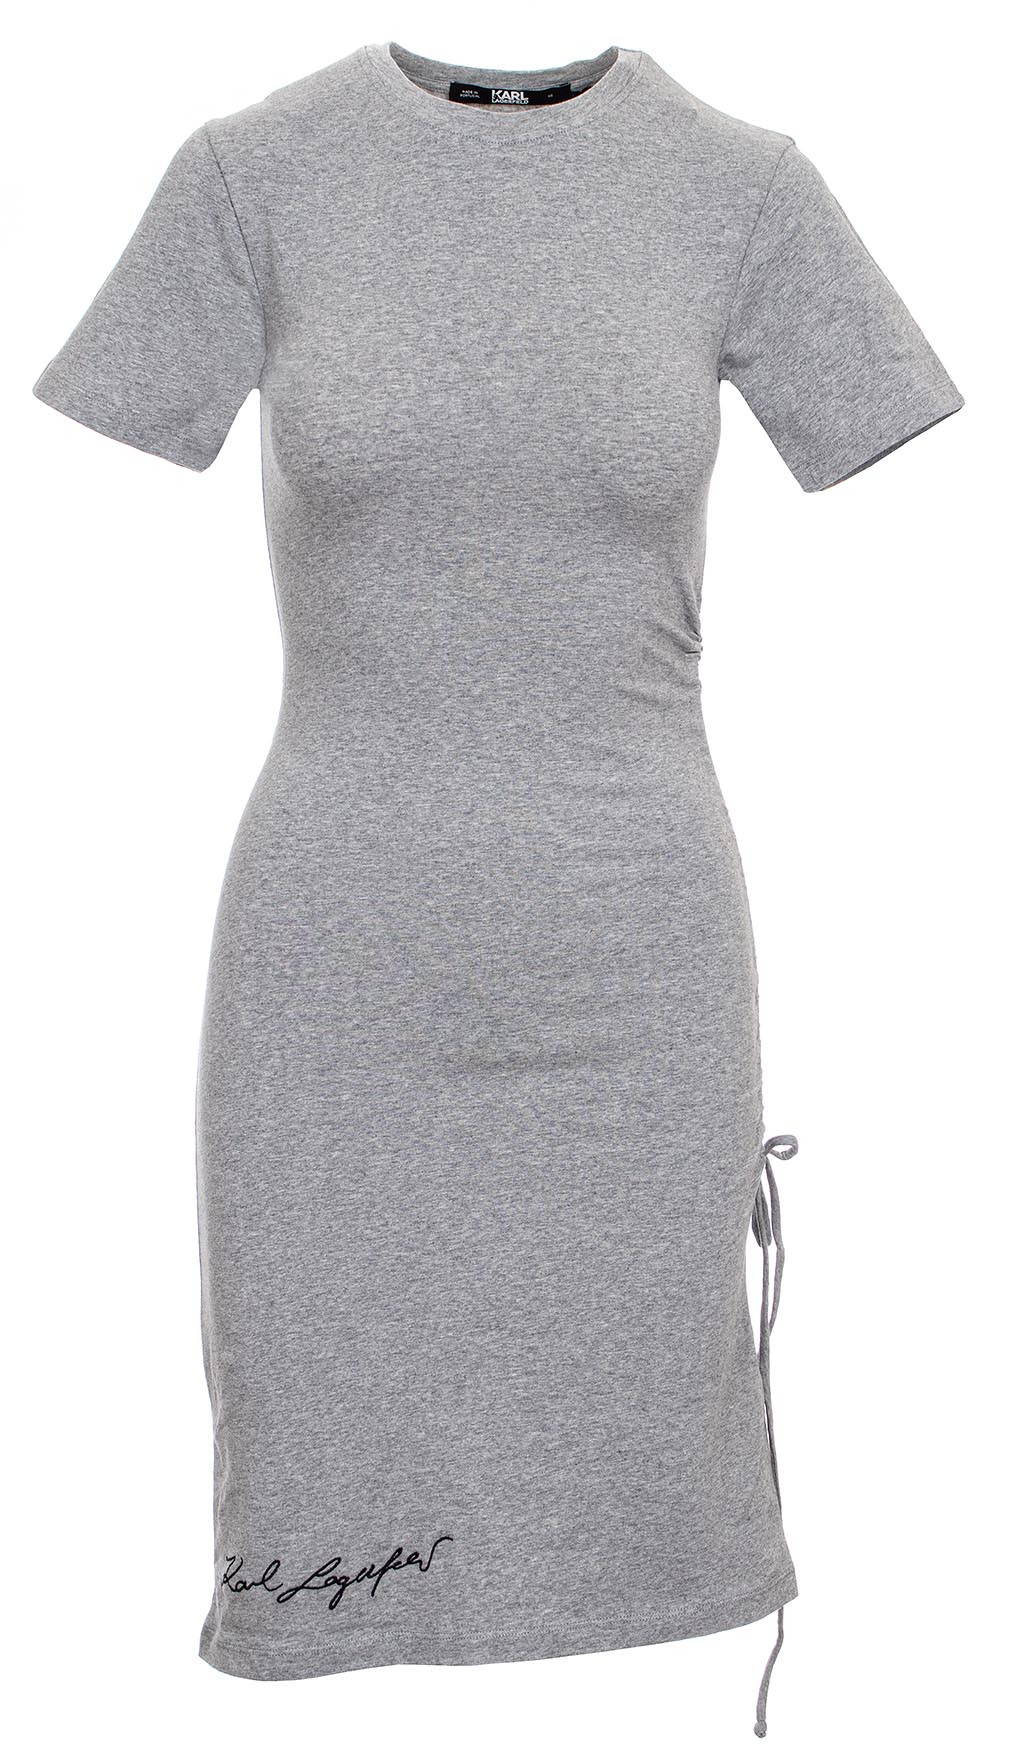 Karl Lagerfeld dámské T-shirt Wrap šaty šedé Velikost: L